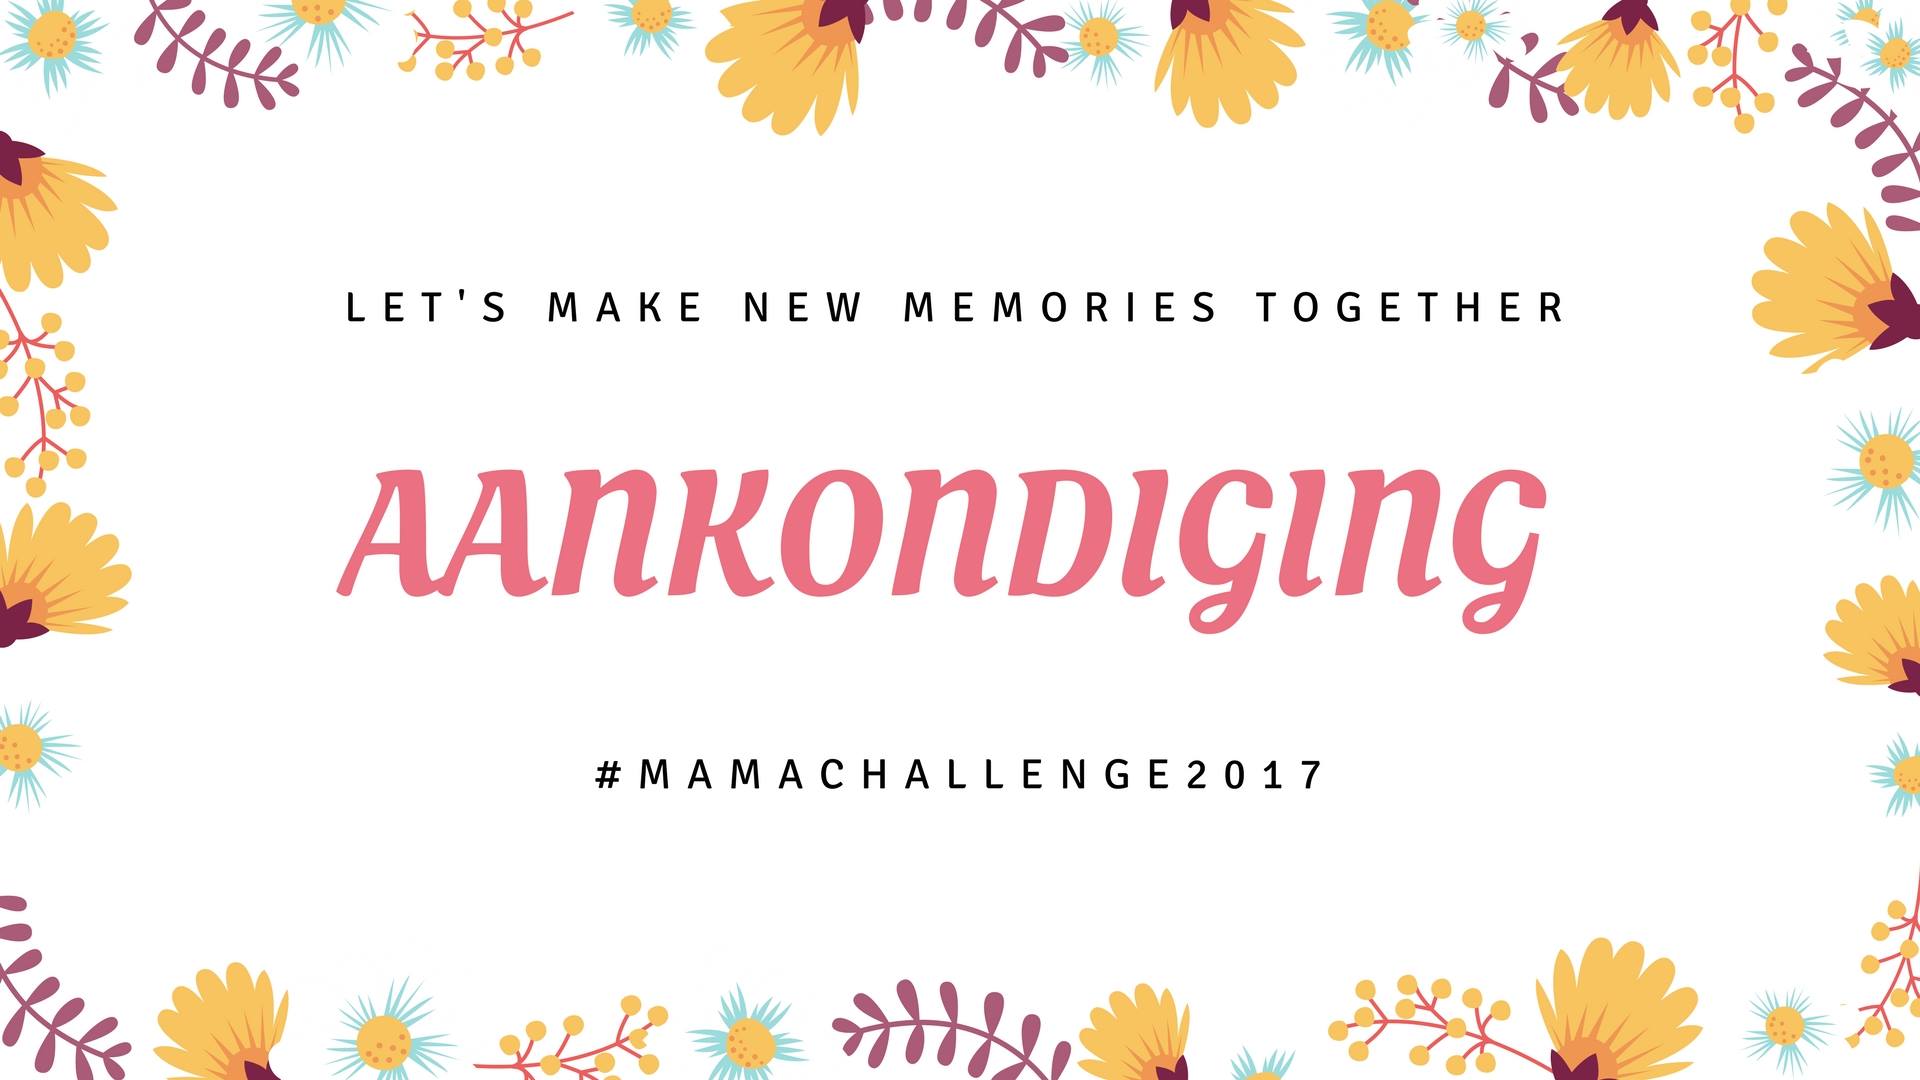 aankondiging Mamachallenge 2017